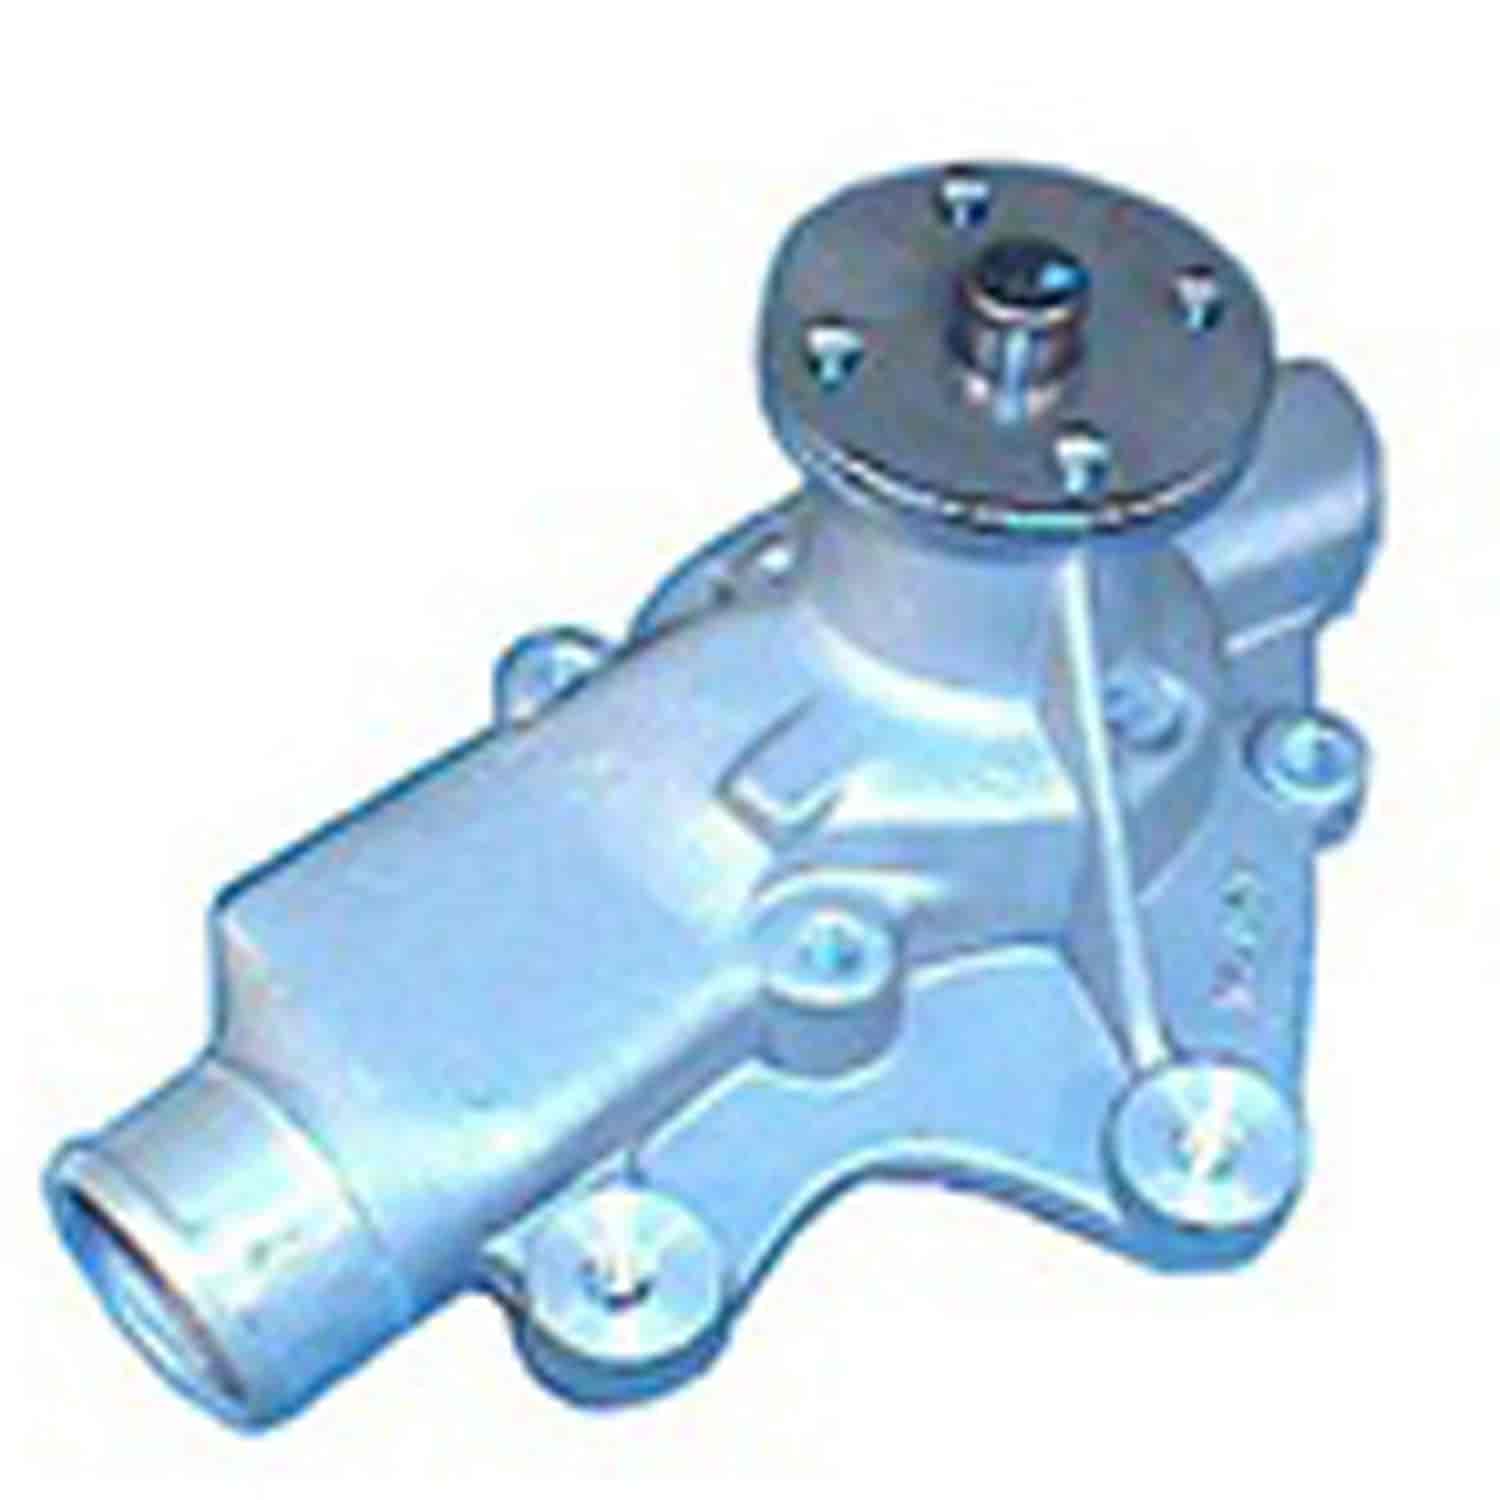 Water Pump For 2.5L AMC With Serpentine Belt 1983 CJ5 1983-1986 CJ7 1983-1986 CJ8